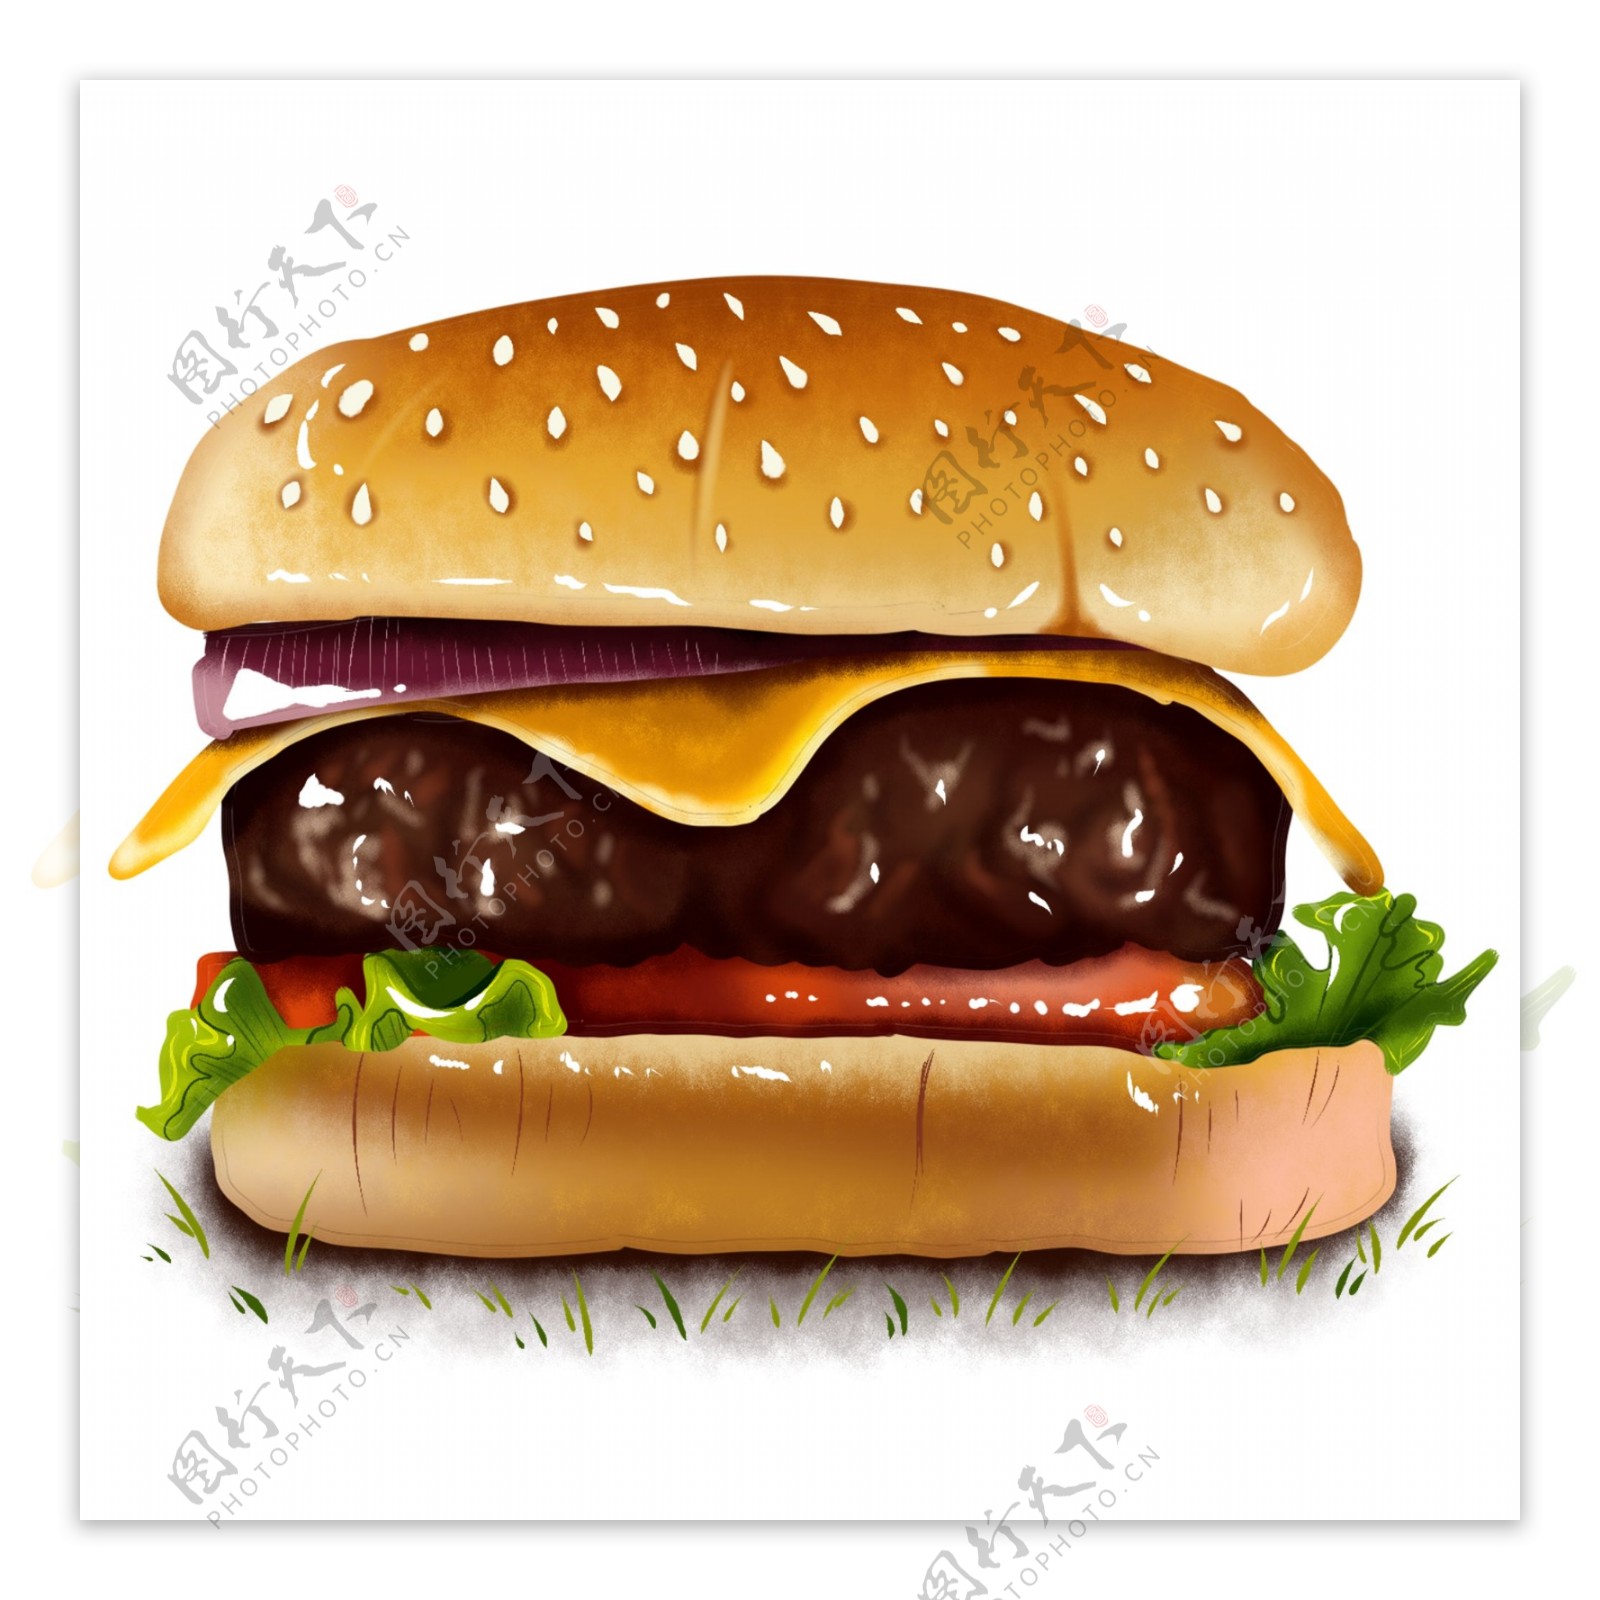 原创手绘快餐汉堡牛肉生菜食物芝士西红柿